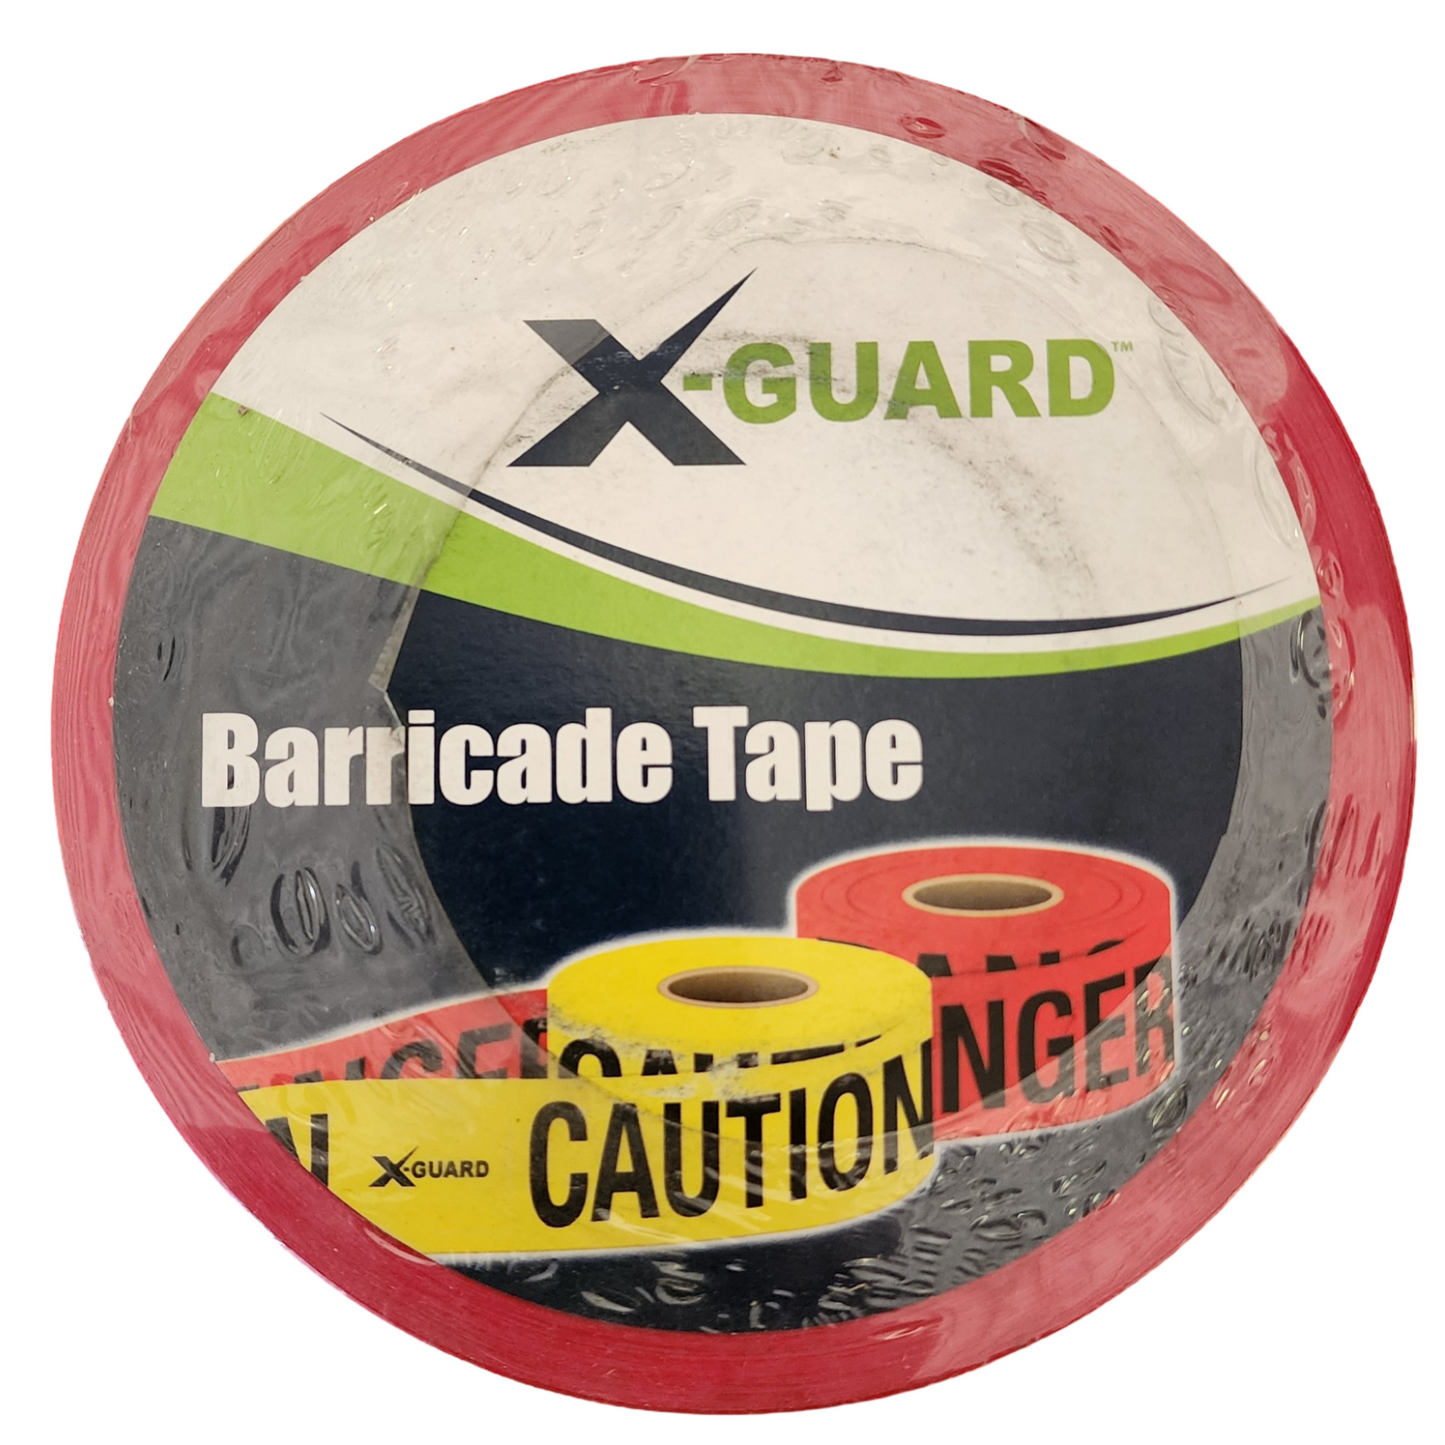 X-Guard Barricade Tape: Danger Do Not Enter - 3" x 1000', Pack of 3 Rolls